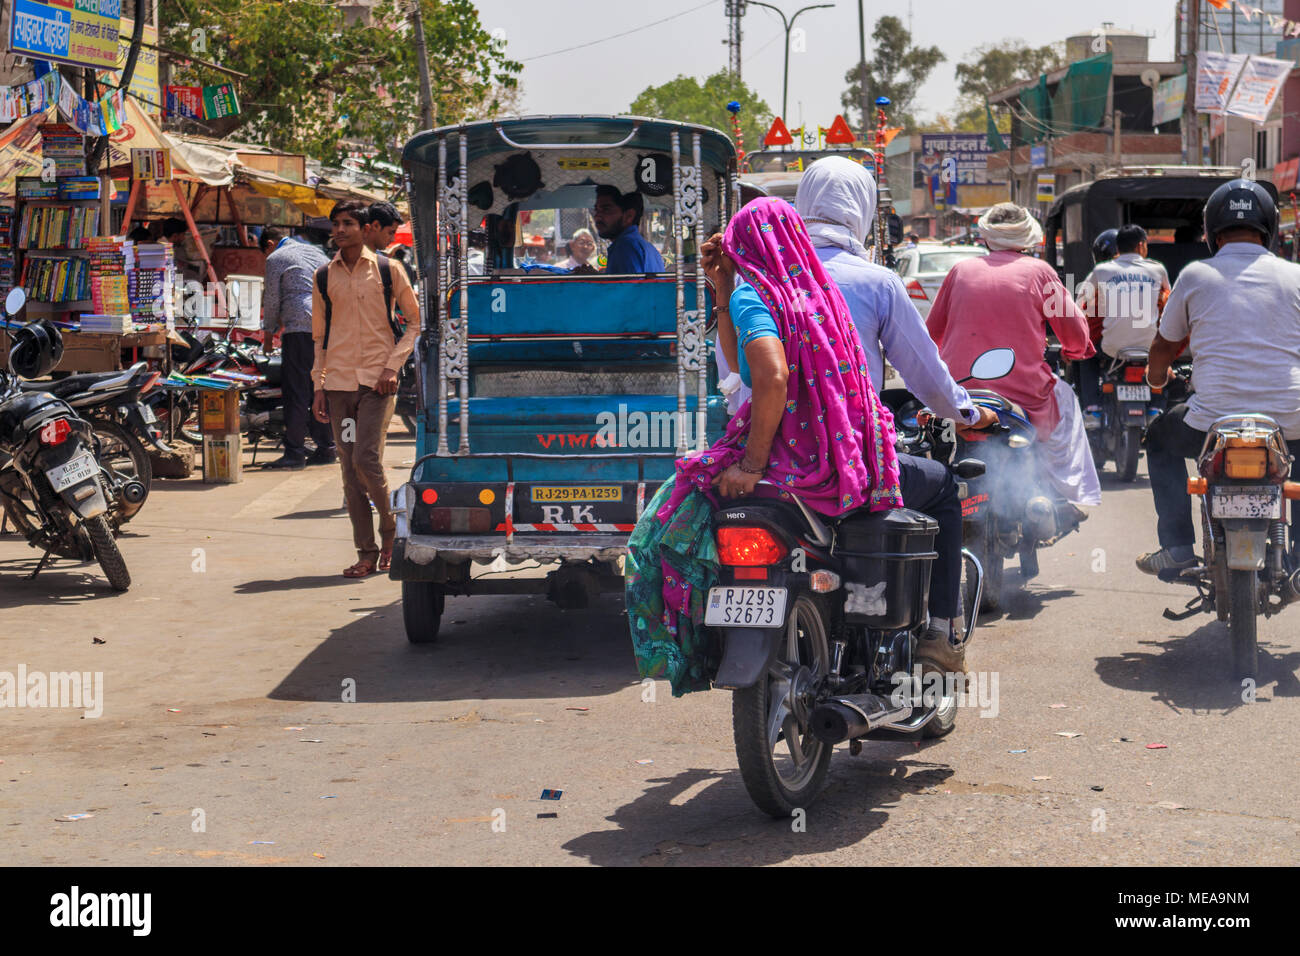 Straßenszene in Dausa, Rajasthan, Nordindien, eine lokale Frau reiten Sozius auf einem Motorrad mit typischen bunten lokalen Schleier Kopfschmuck und Kleidung Stockfoto